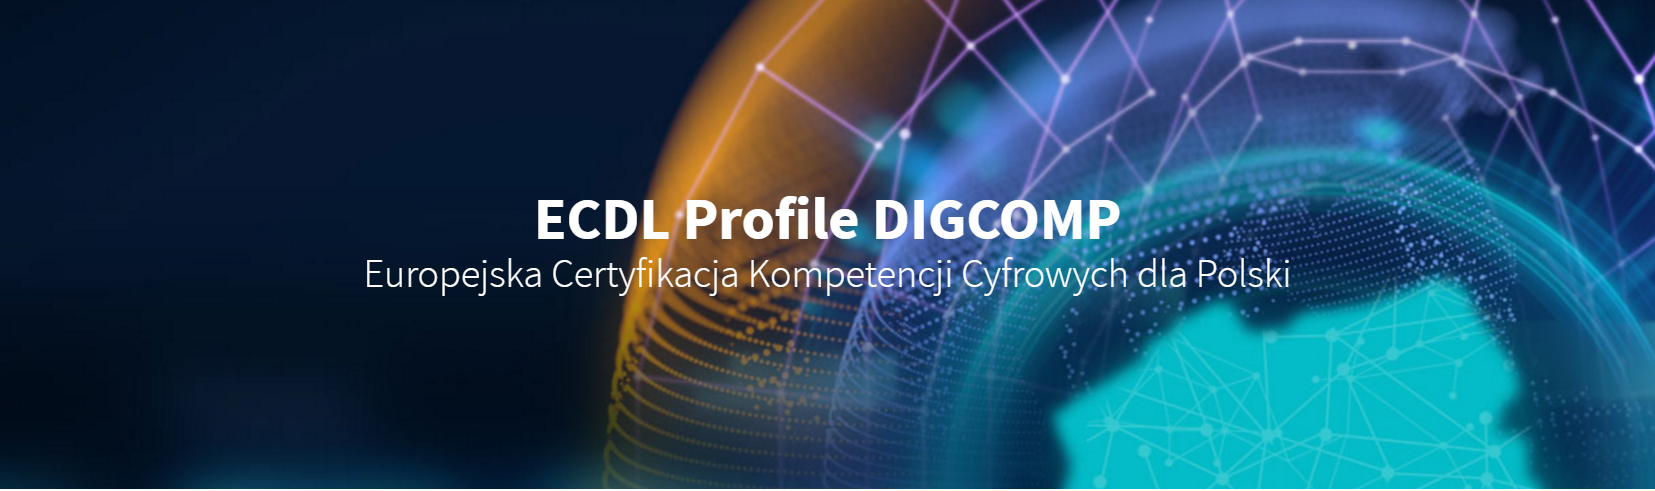 ECDL Profile DIGCOMP Europejska Certyfikacja Kompetencji Cyfrowych dla Polski